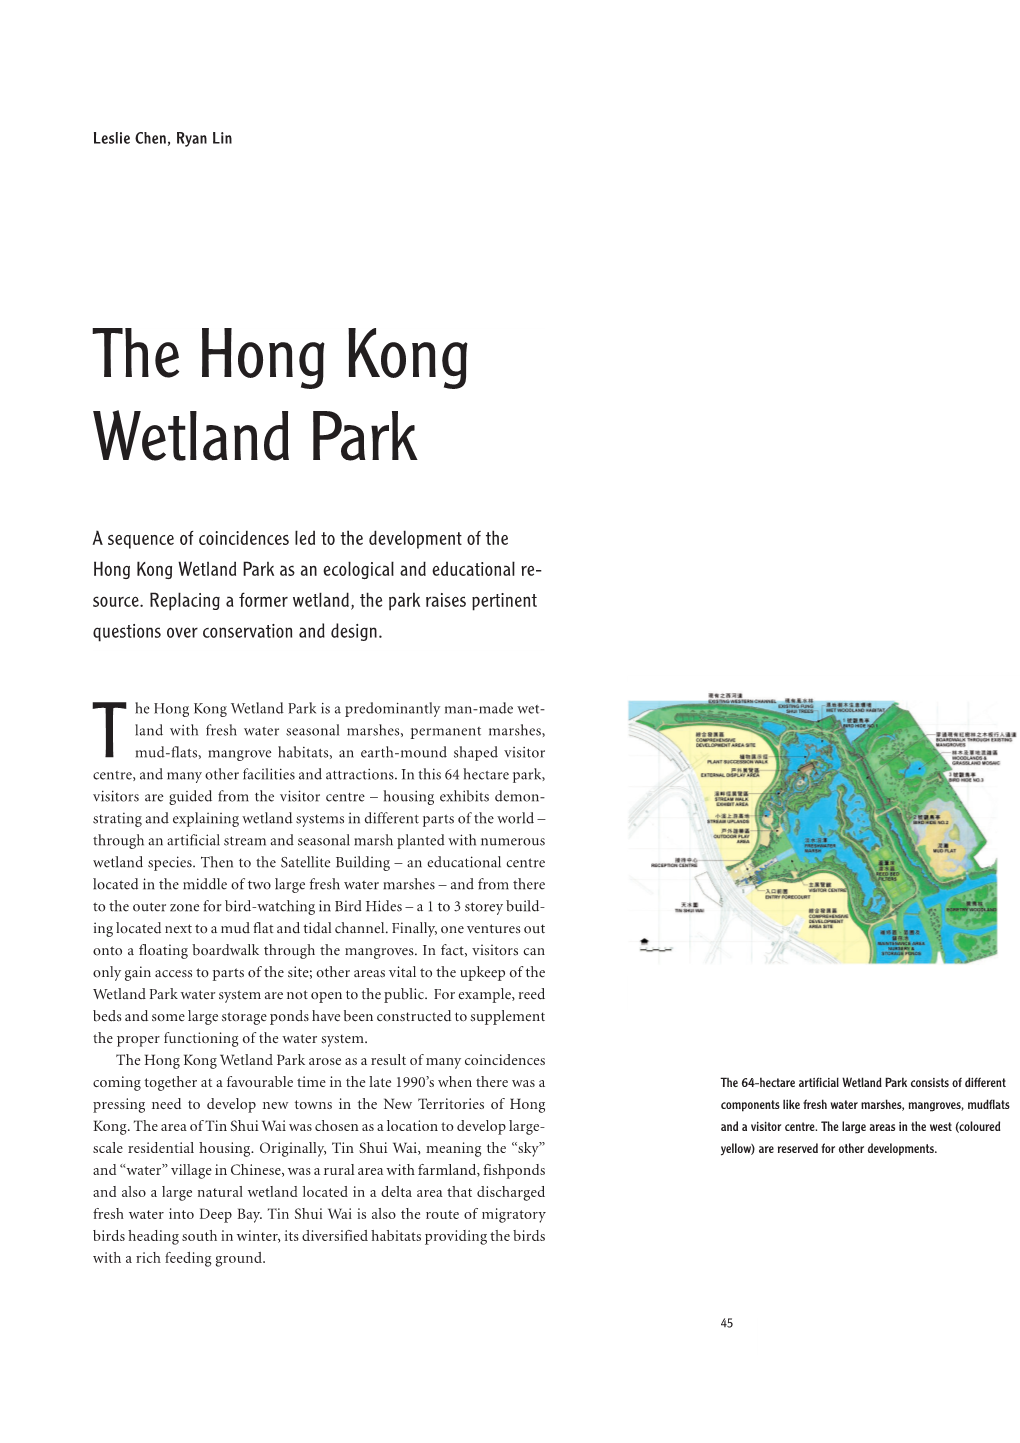 The Hong Kong Wetland Park